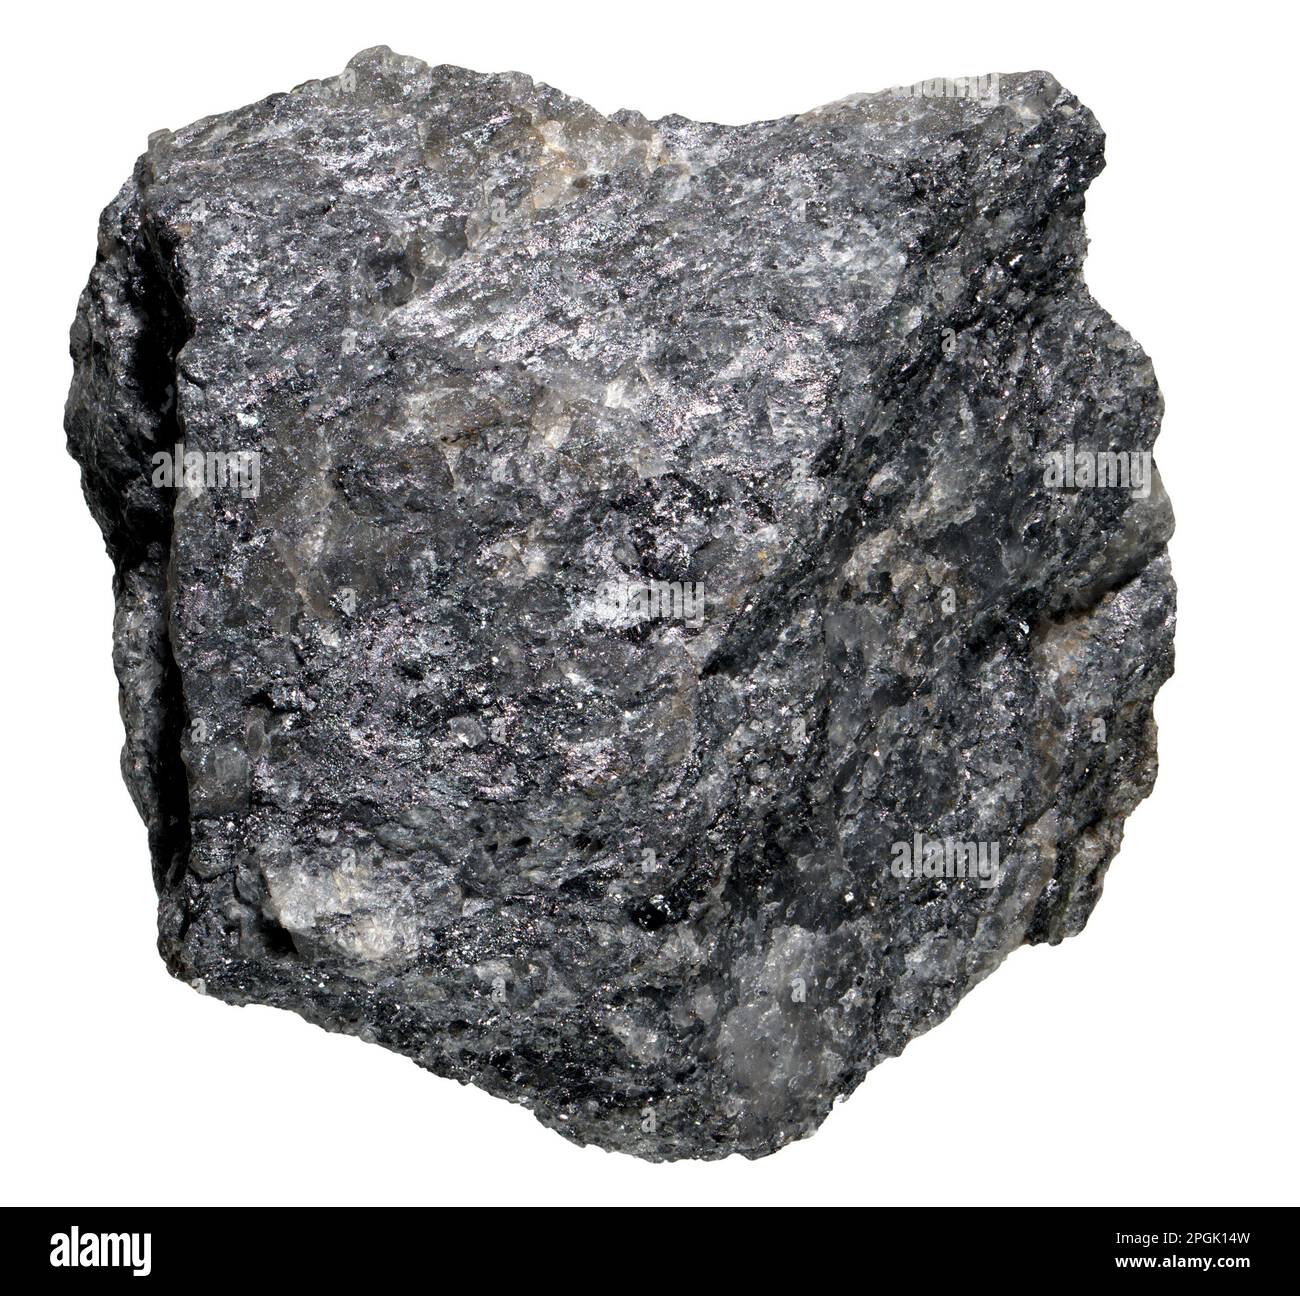 Willemite (Zinksilikatmineralien [Zn2SiO4] – Nebenerz von Zink) und Calcite aus Garpenberg, Schweden Stockfoto